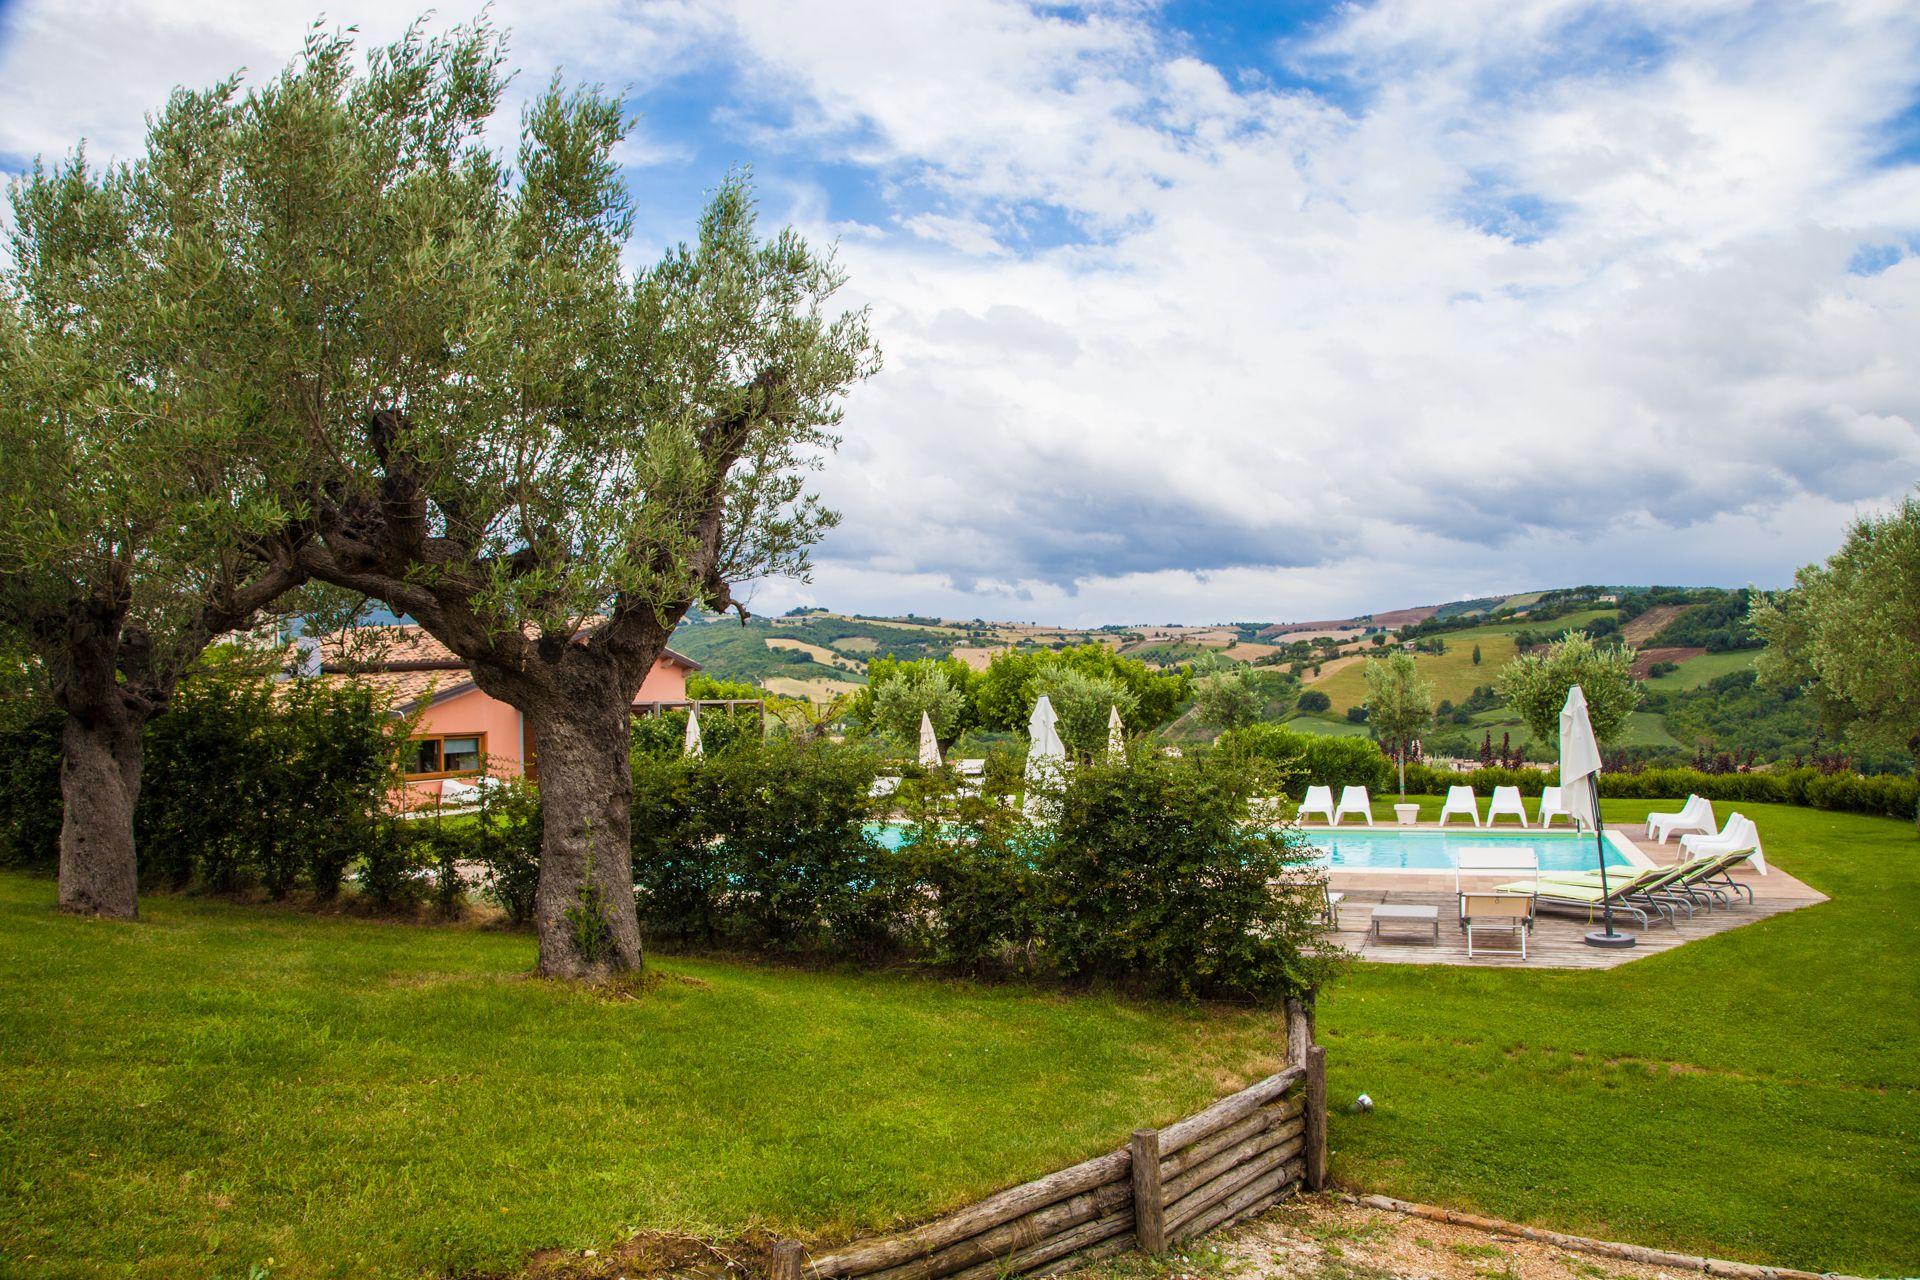 Ferienwohnung für 2 Personen  + 1 Kind ca. 45 Bauernhof in Italien